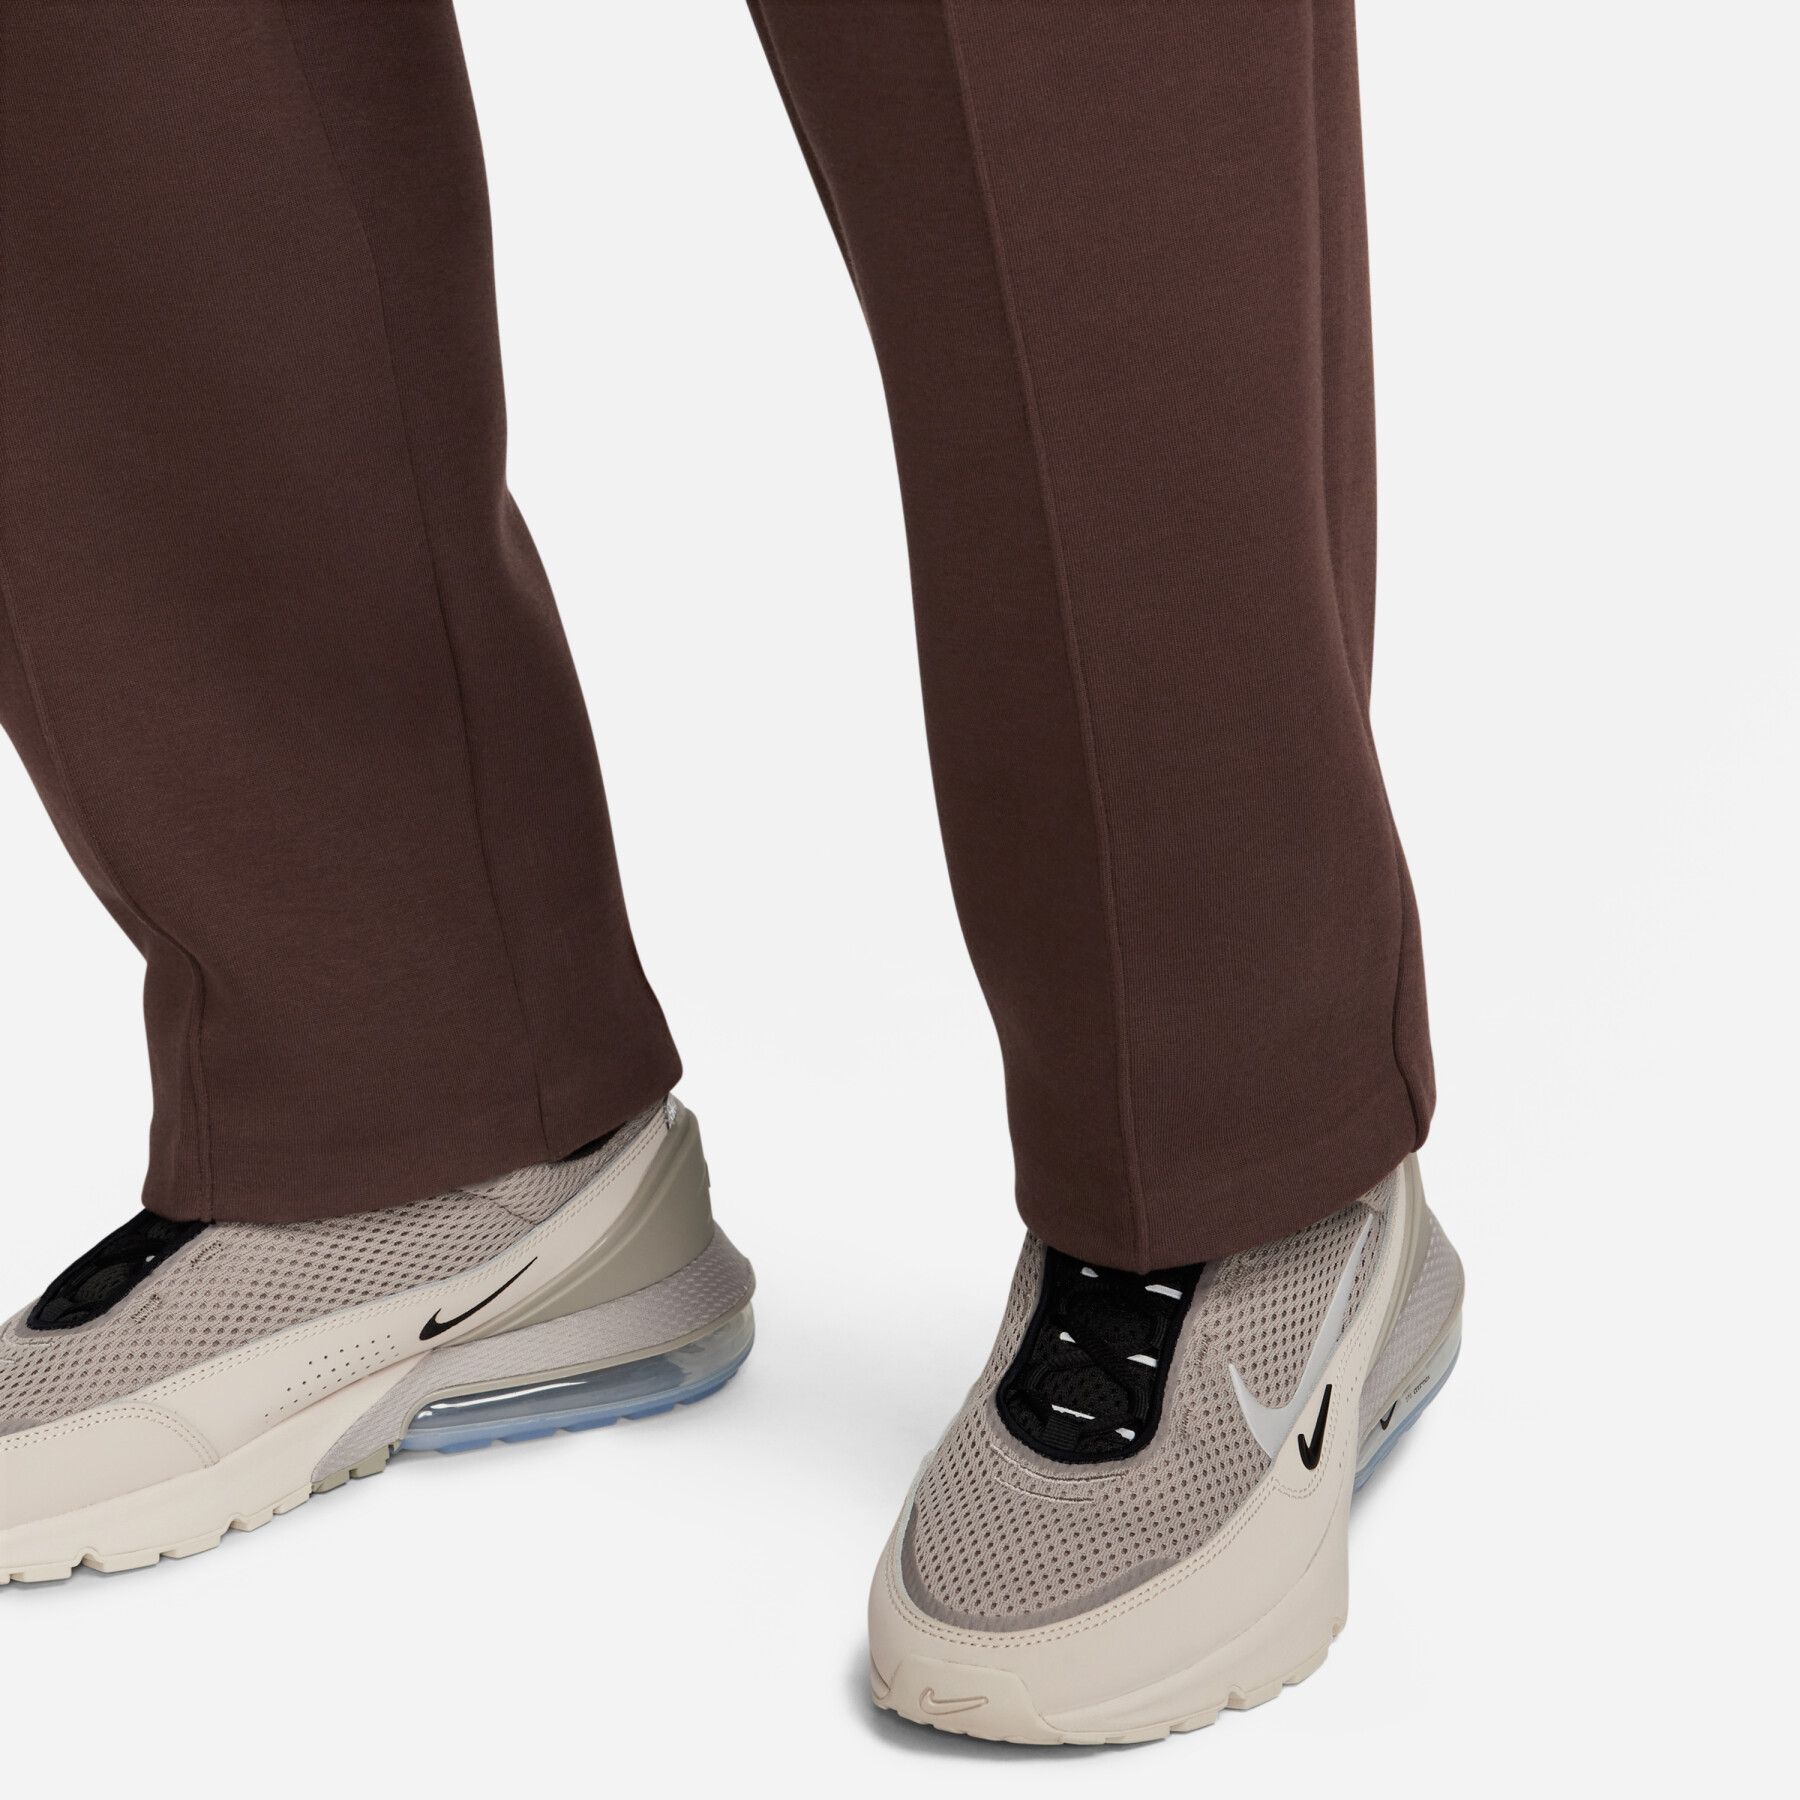 Pantaloni della tuta aderenti con orlo aperto Nike Tech Fleece Reimagined